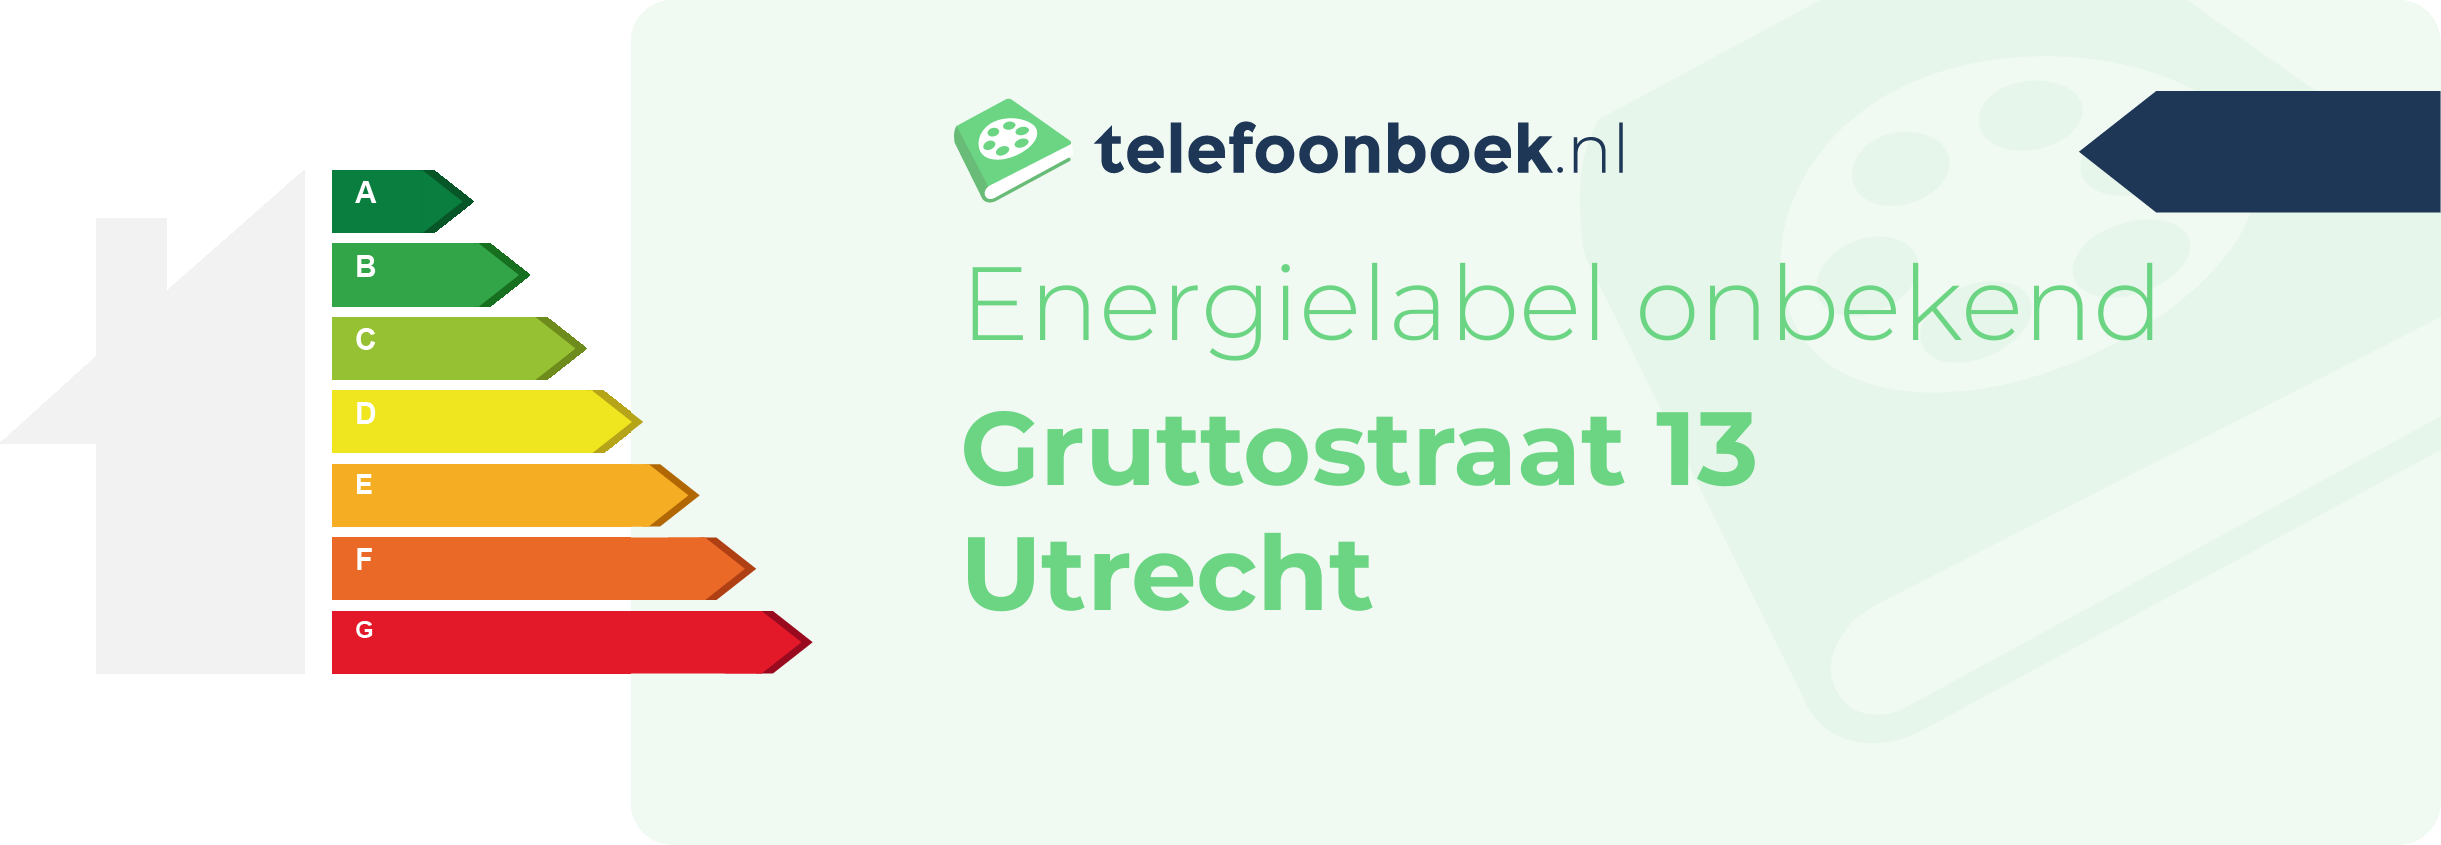 Energielabel Gruttostraat 13 Utrecht